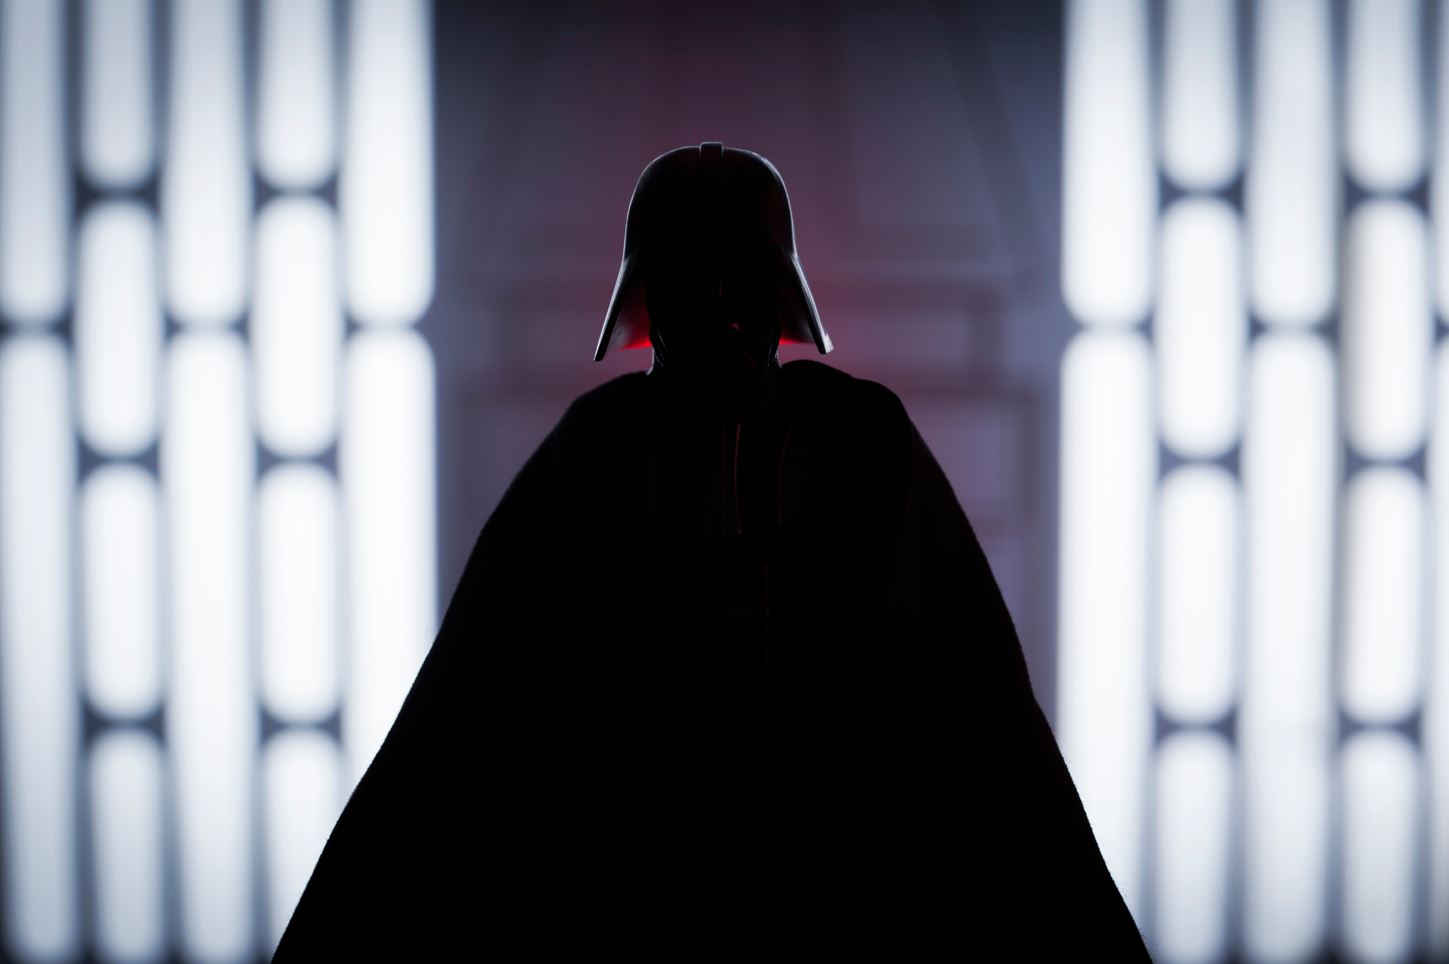 Anakin become Darth Vader